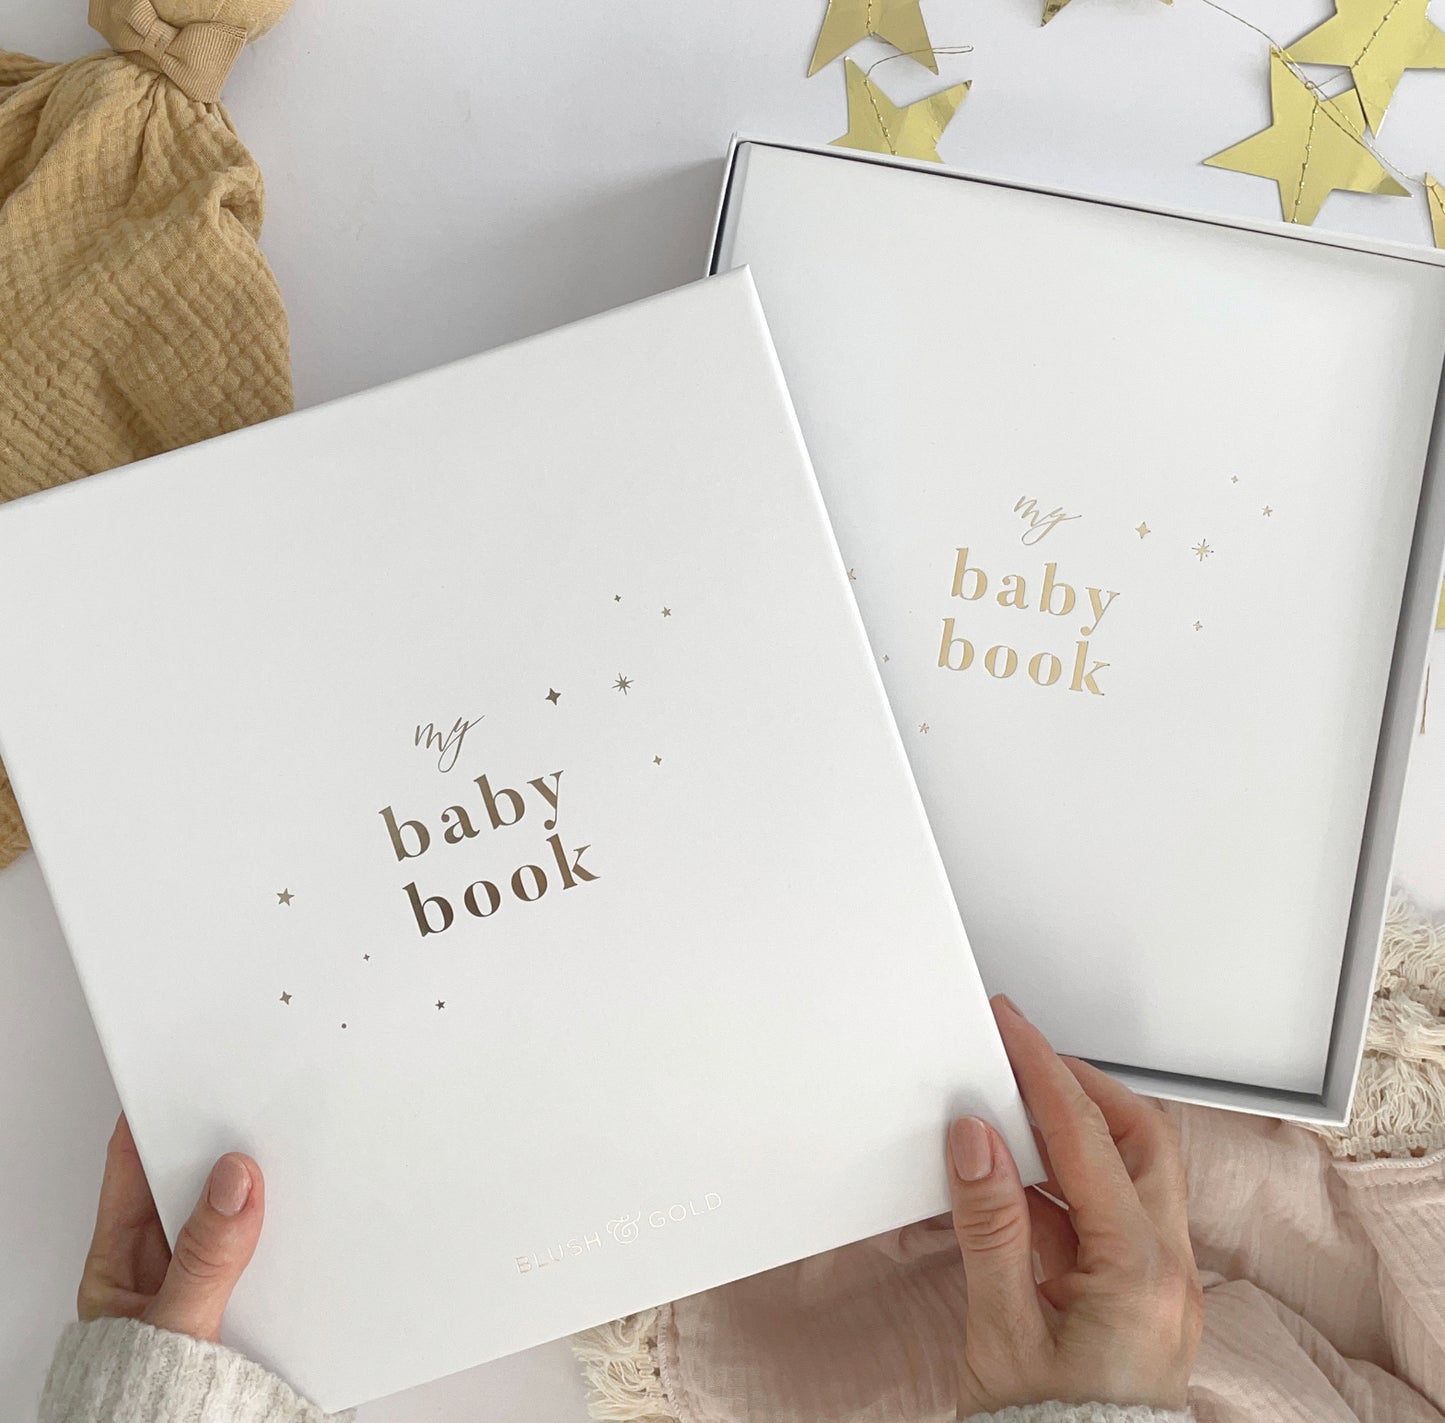 My Baby Book - Baby Memory Book - White